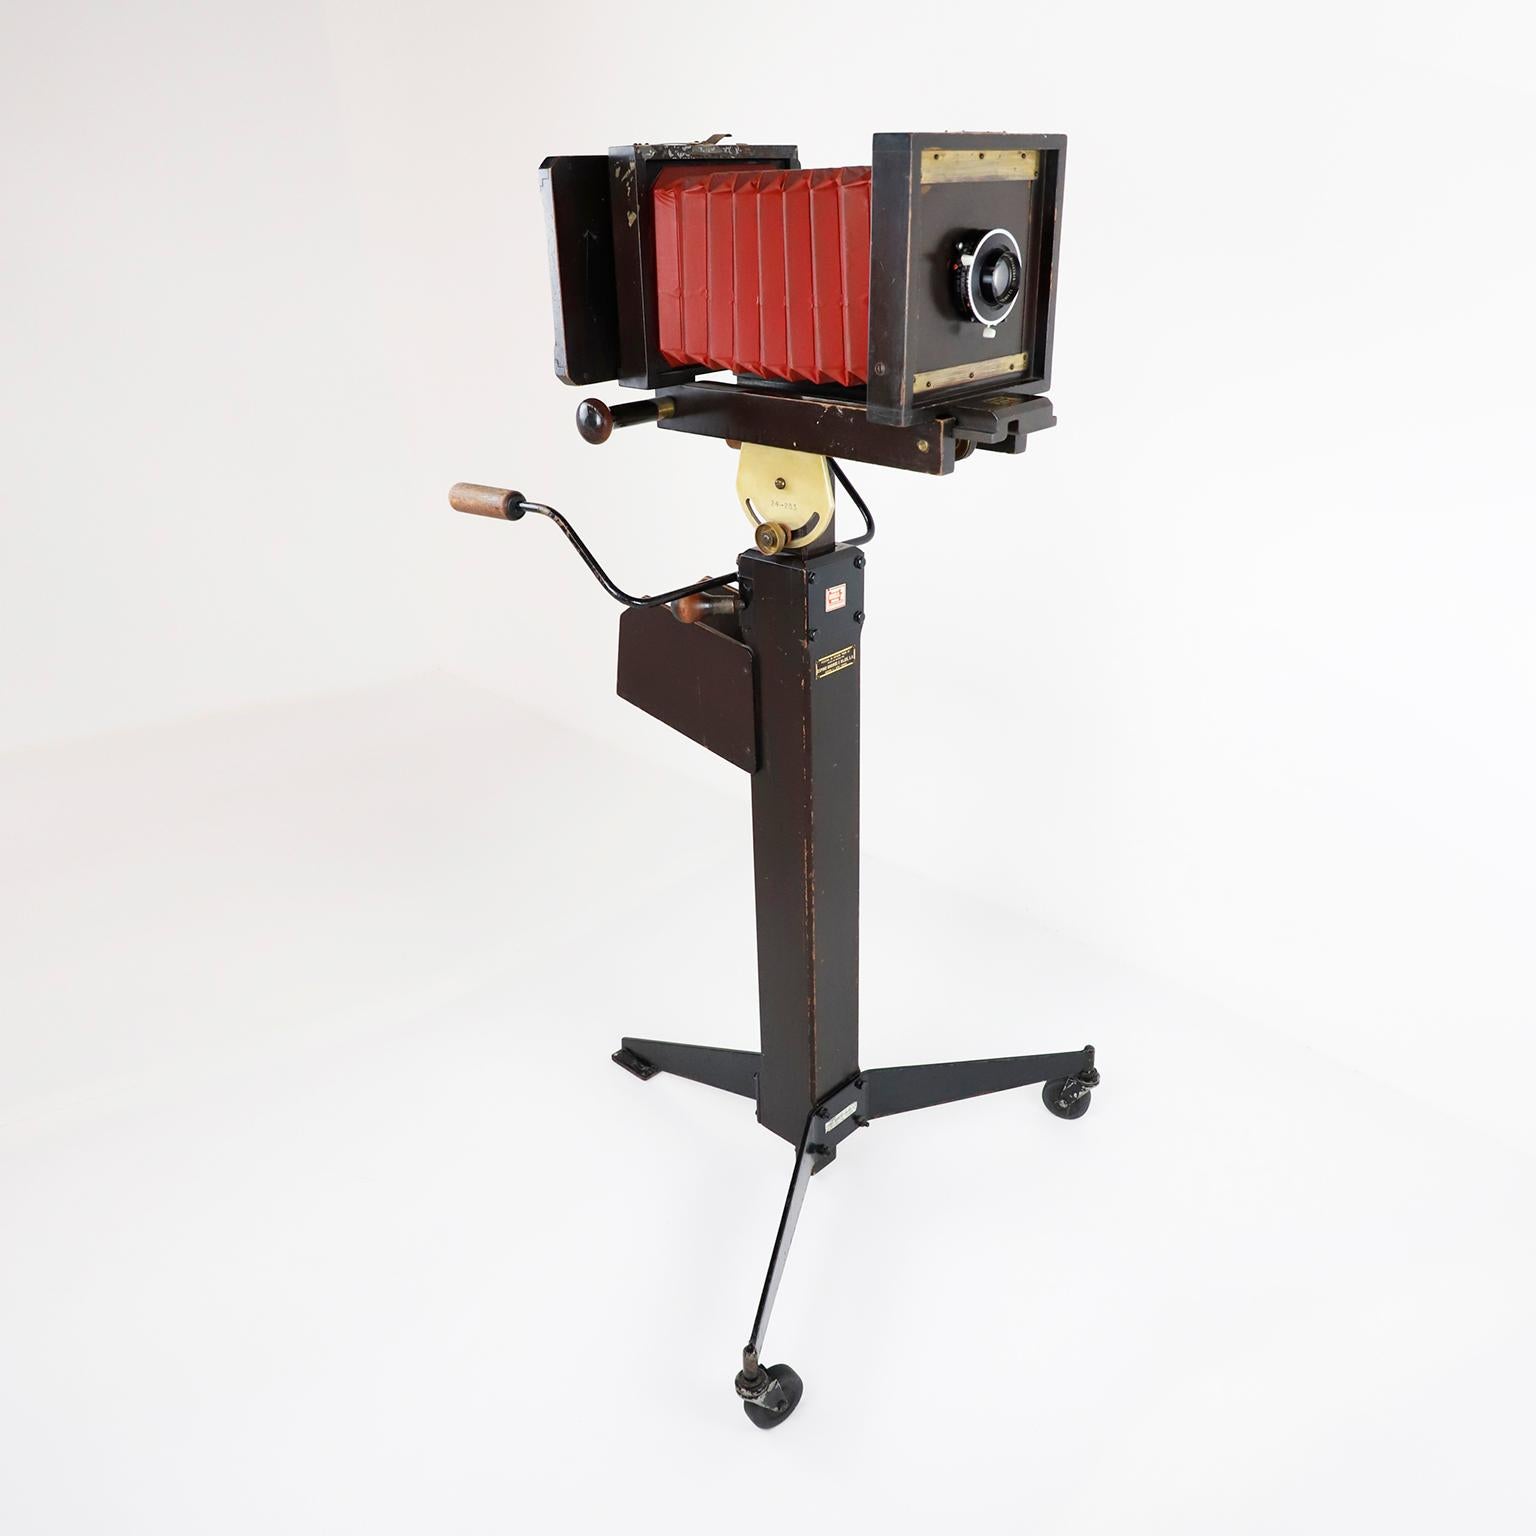 Circa 1960. Wir bieten diese antike Holzplatte faltende fotografische Kamera mit Stativ, die Kamera noch funktioniert.